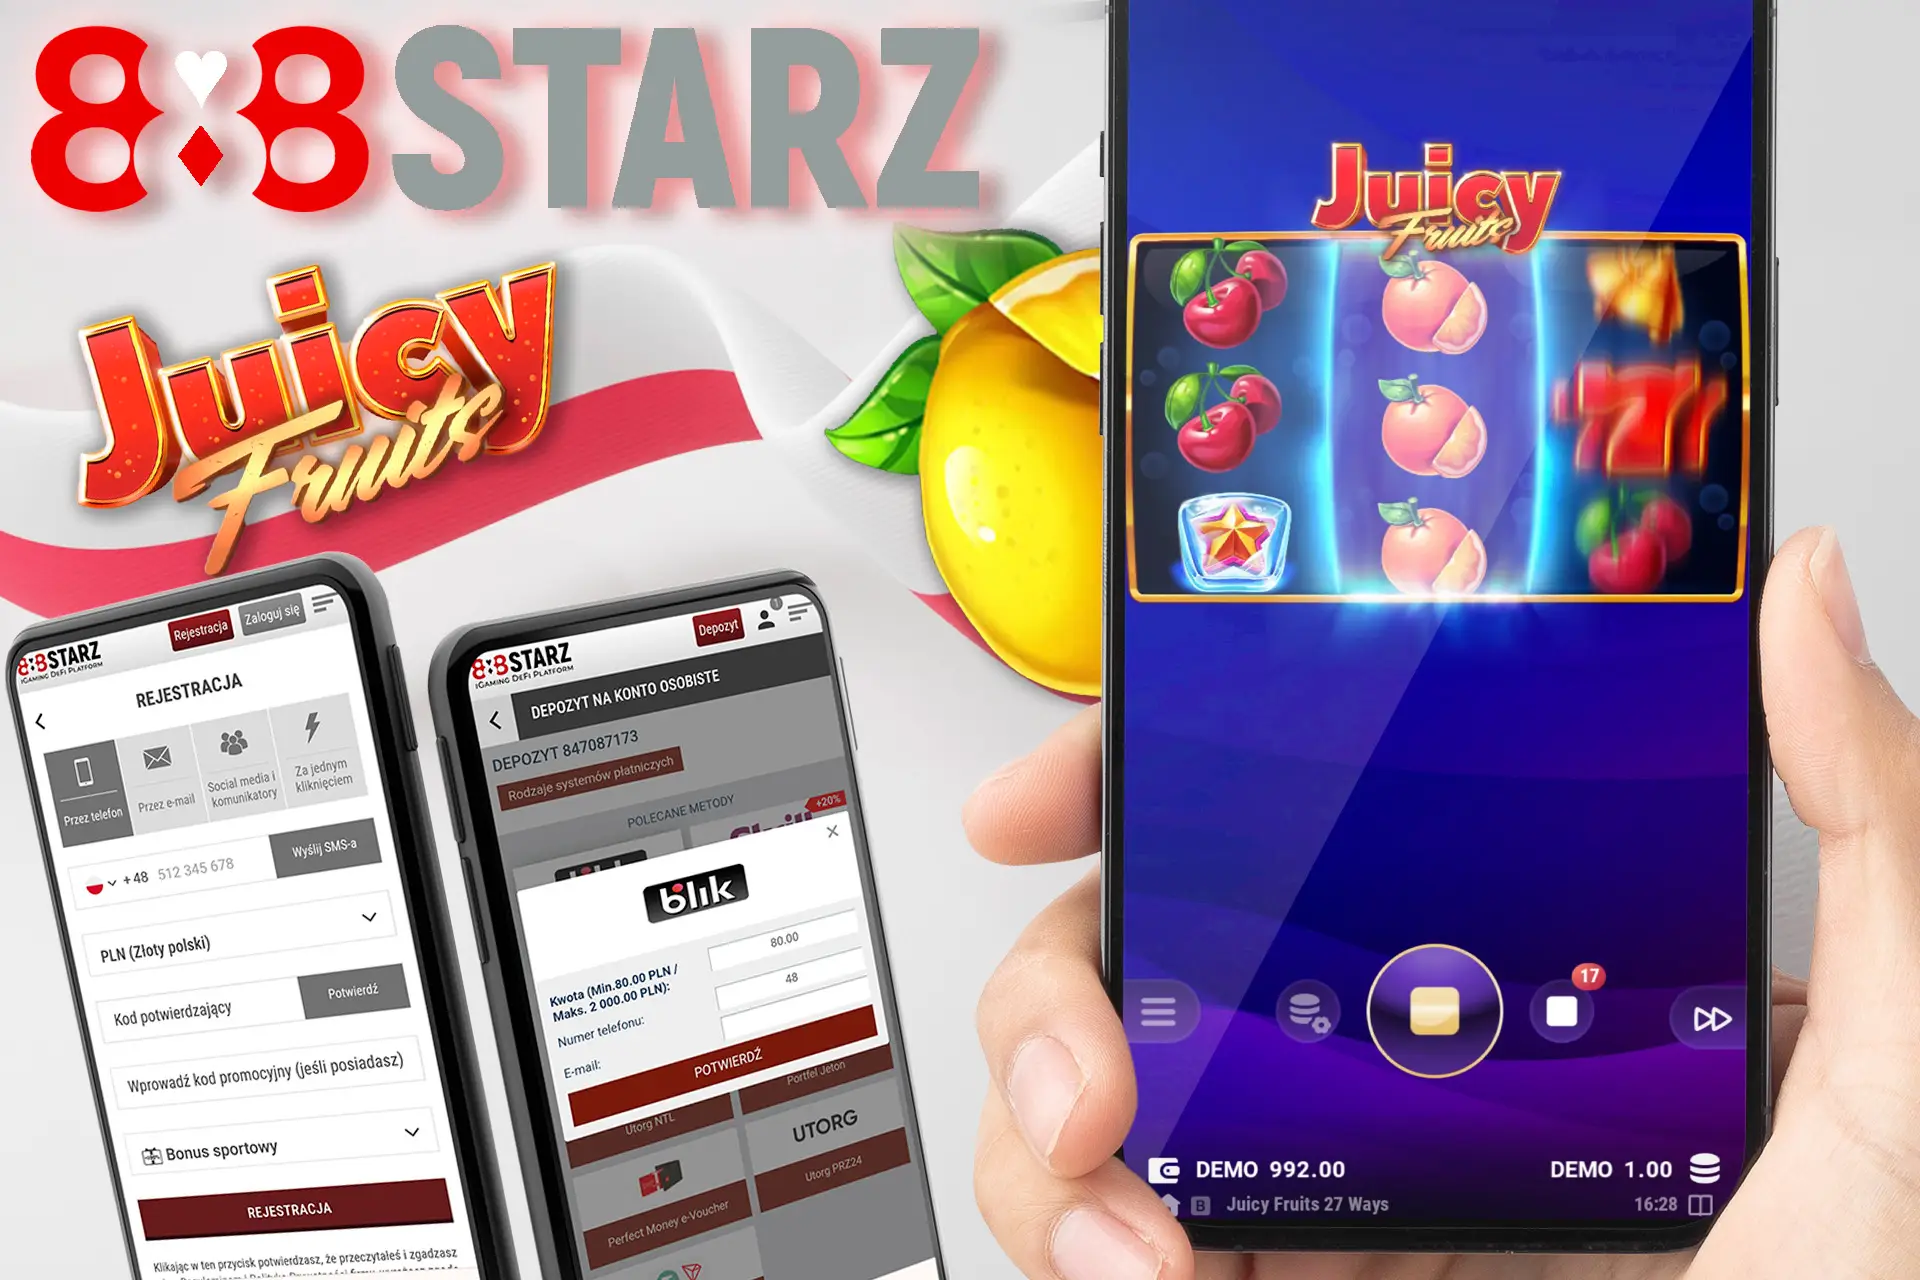 Zarejestruj się, złóż swój pierwszy depozyt i zacznij grać w Juicy Fruits Sunshine Rich na 888starz